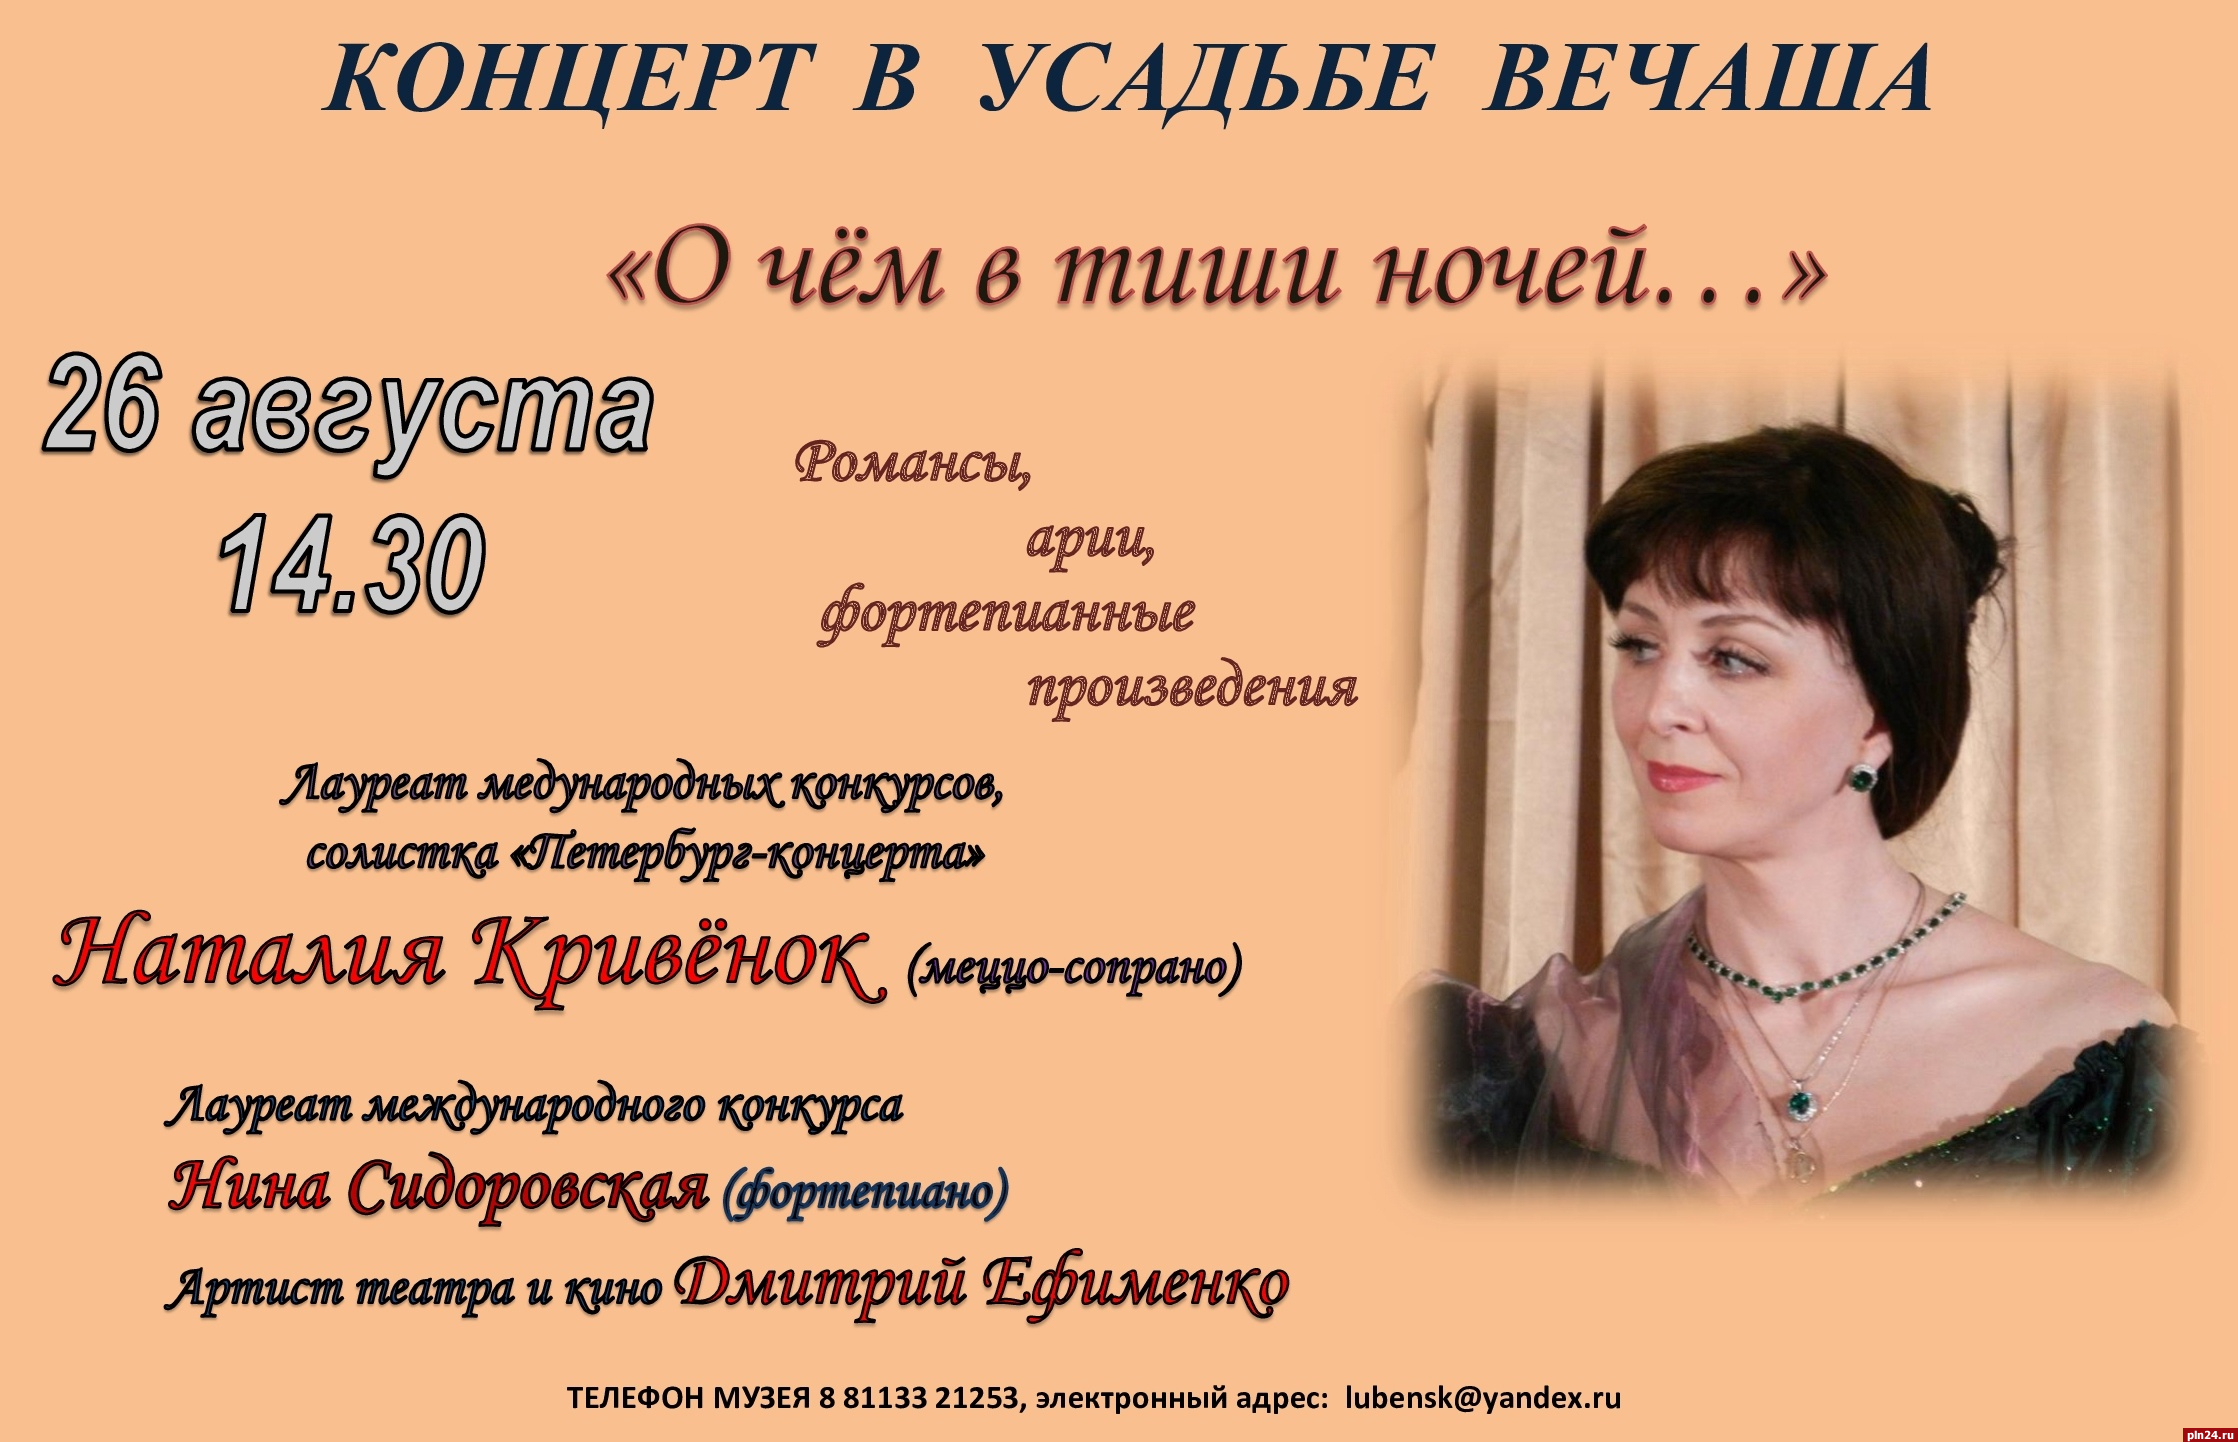 Концерт «О чём в тиши ночей...» пройдет в усадьбе Римского-Корсакова в Вечаше